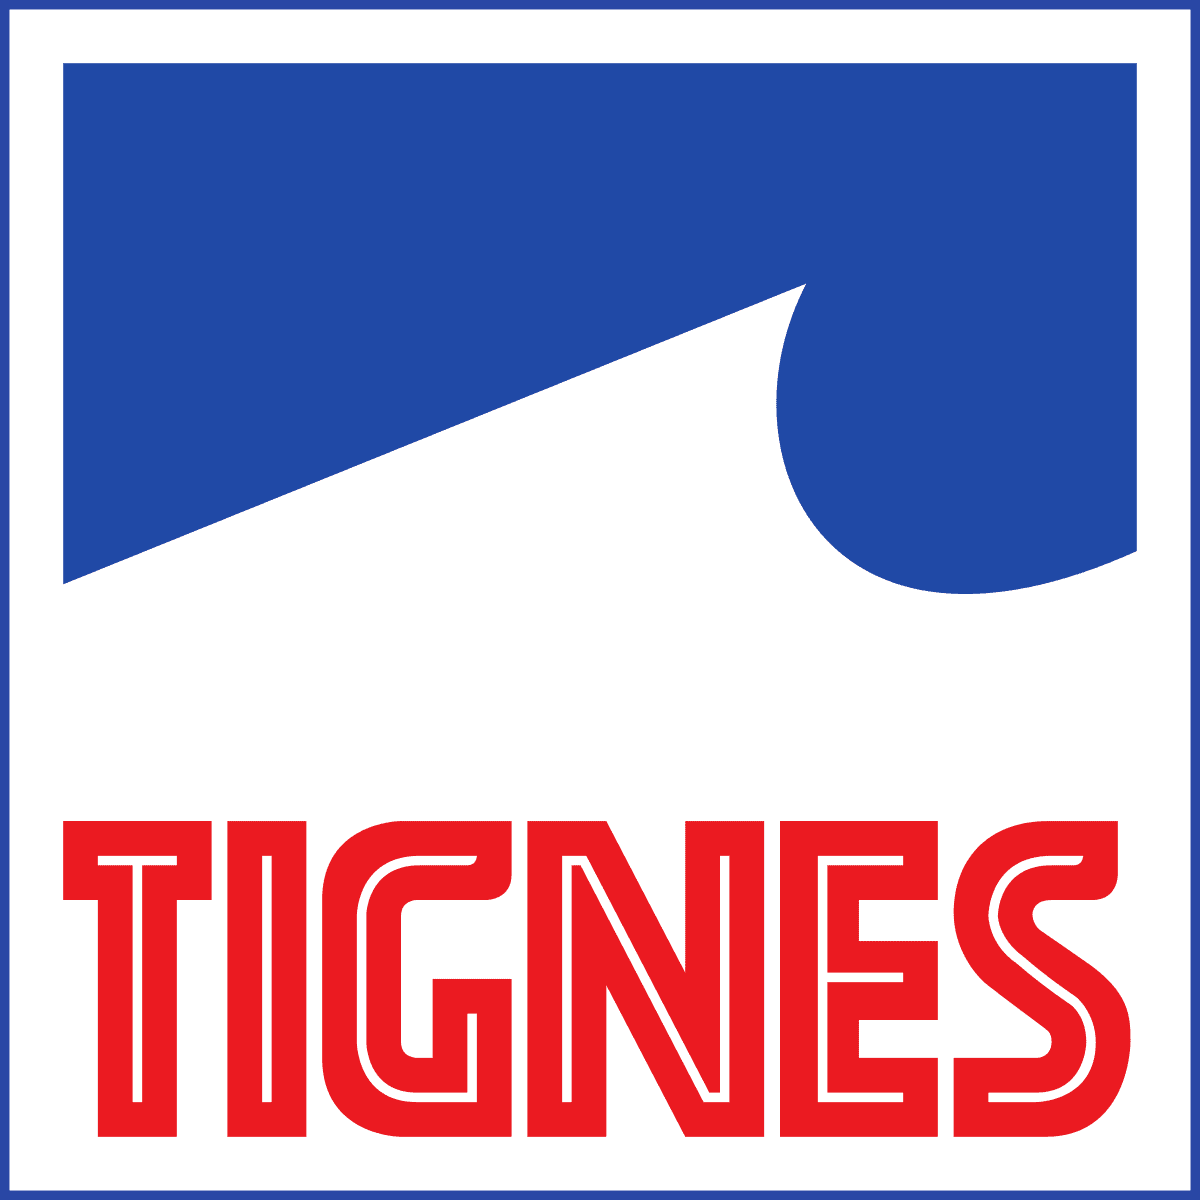 NAVETTE Tignes Aéroport Lyon 249-90 TTC 